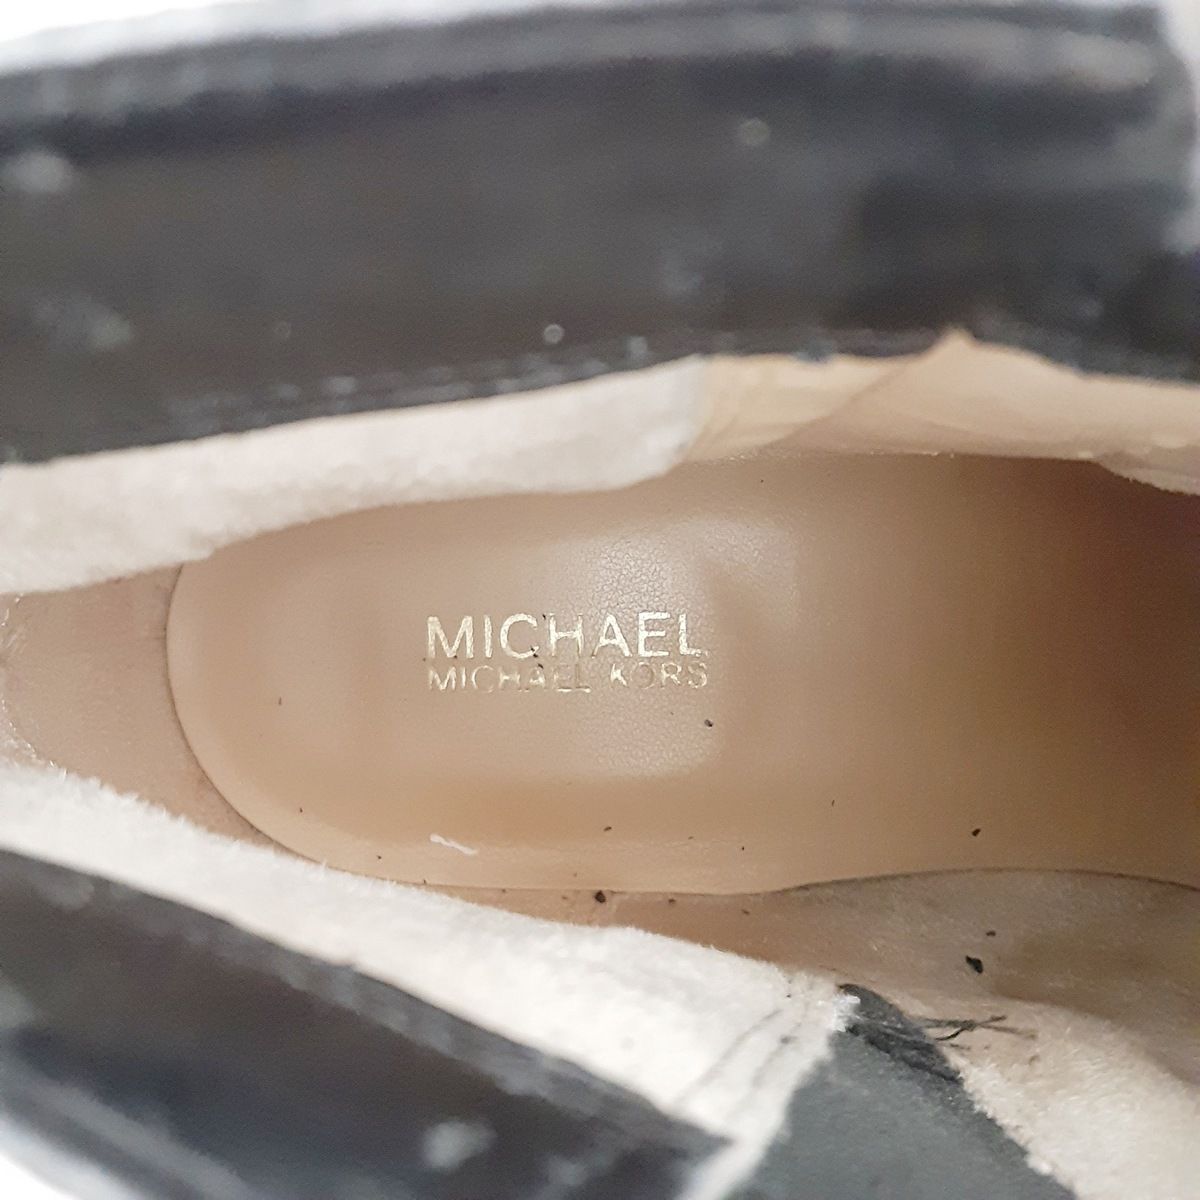 MICHAEL KORS(マイケルコース) ショートブーツ 9 M レディース - 黒×ダークブラウン レザー×PVC(塩化ビニール)